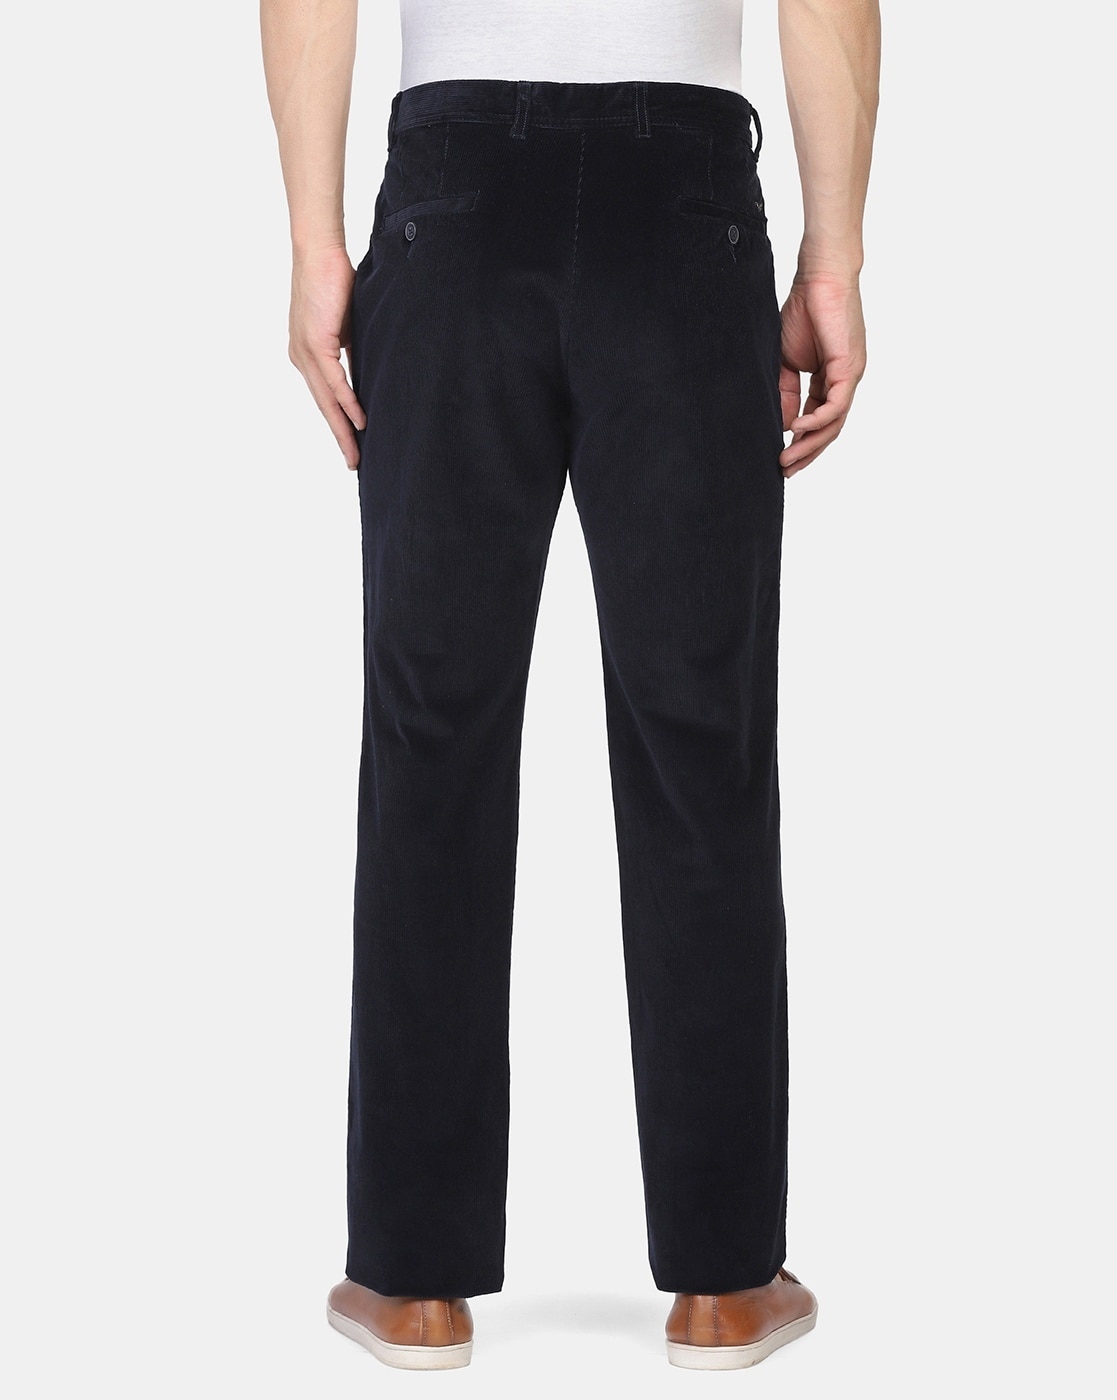 Buy Peter England Men Beige Solid Regular Fit Casual Trouser online